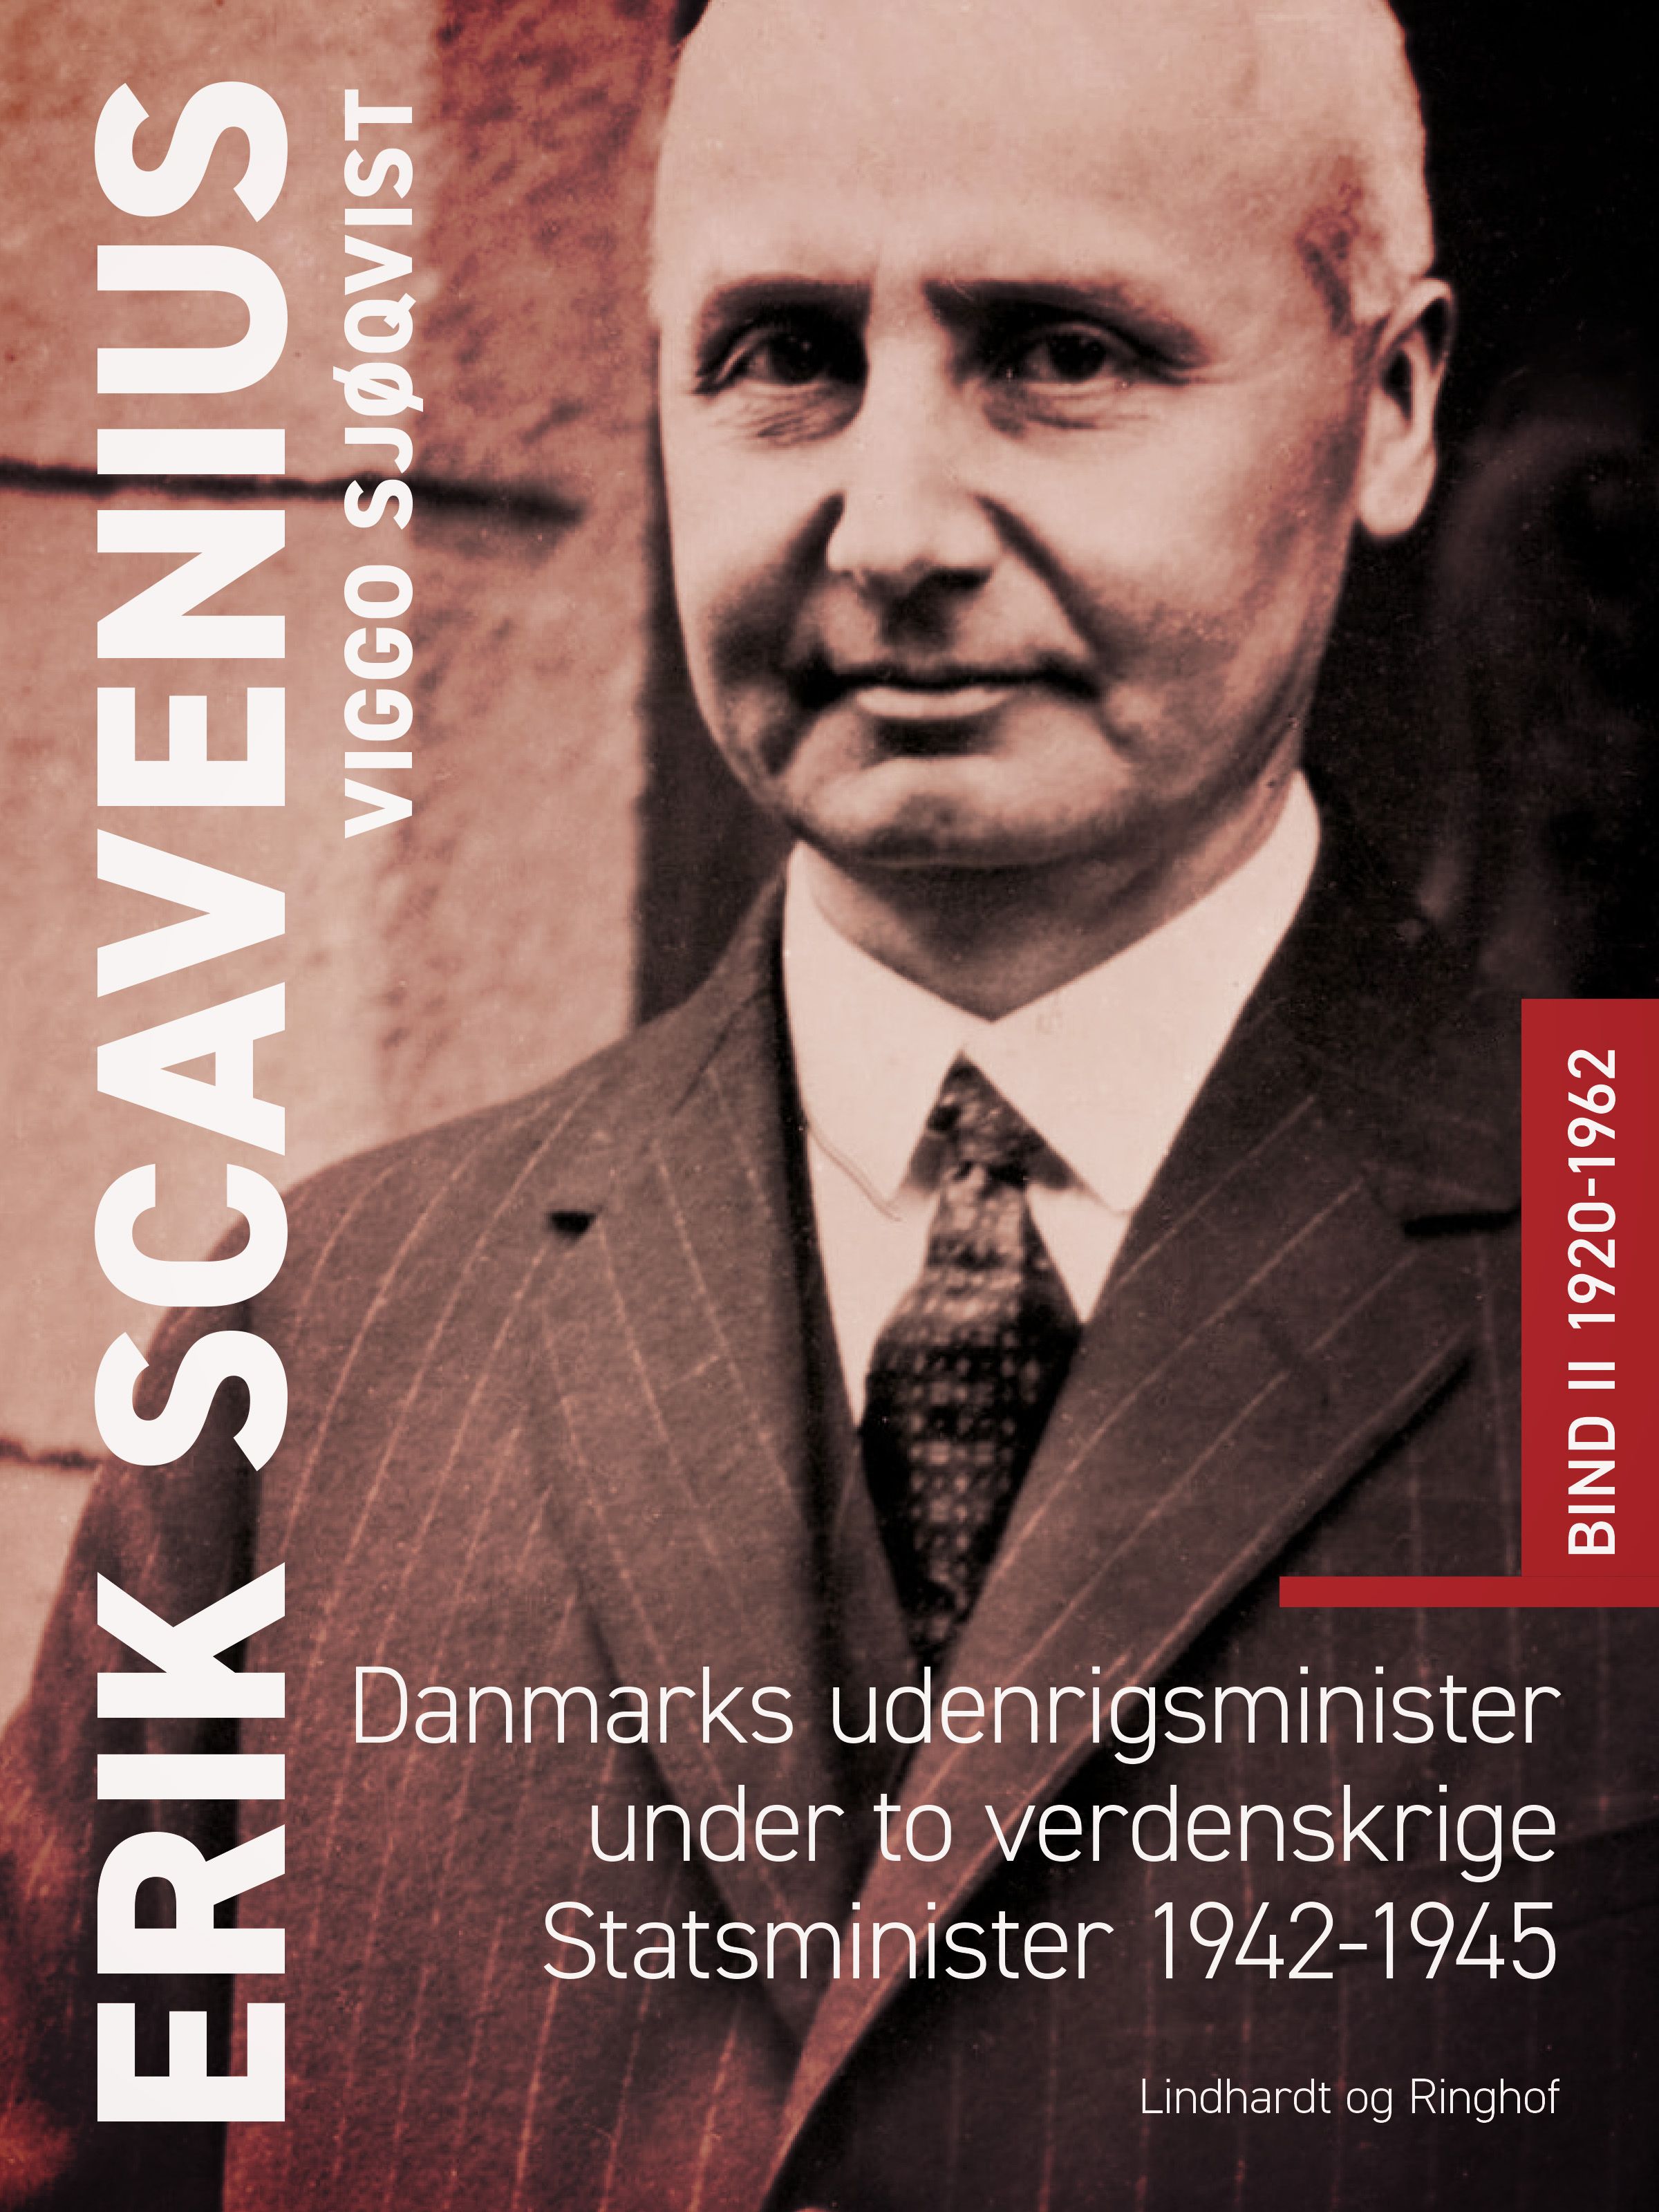 Erik Scavenius. Danmarks udenrigsminister under to verdenskrige. Statsminister 1942-1945. Bind II 1920-1962, e-bok av Viggo Sjøqvist